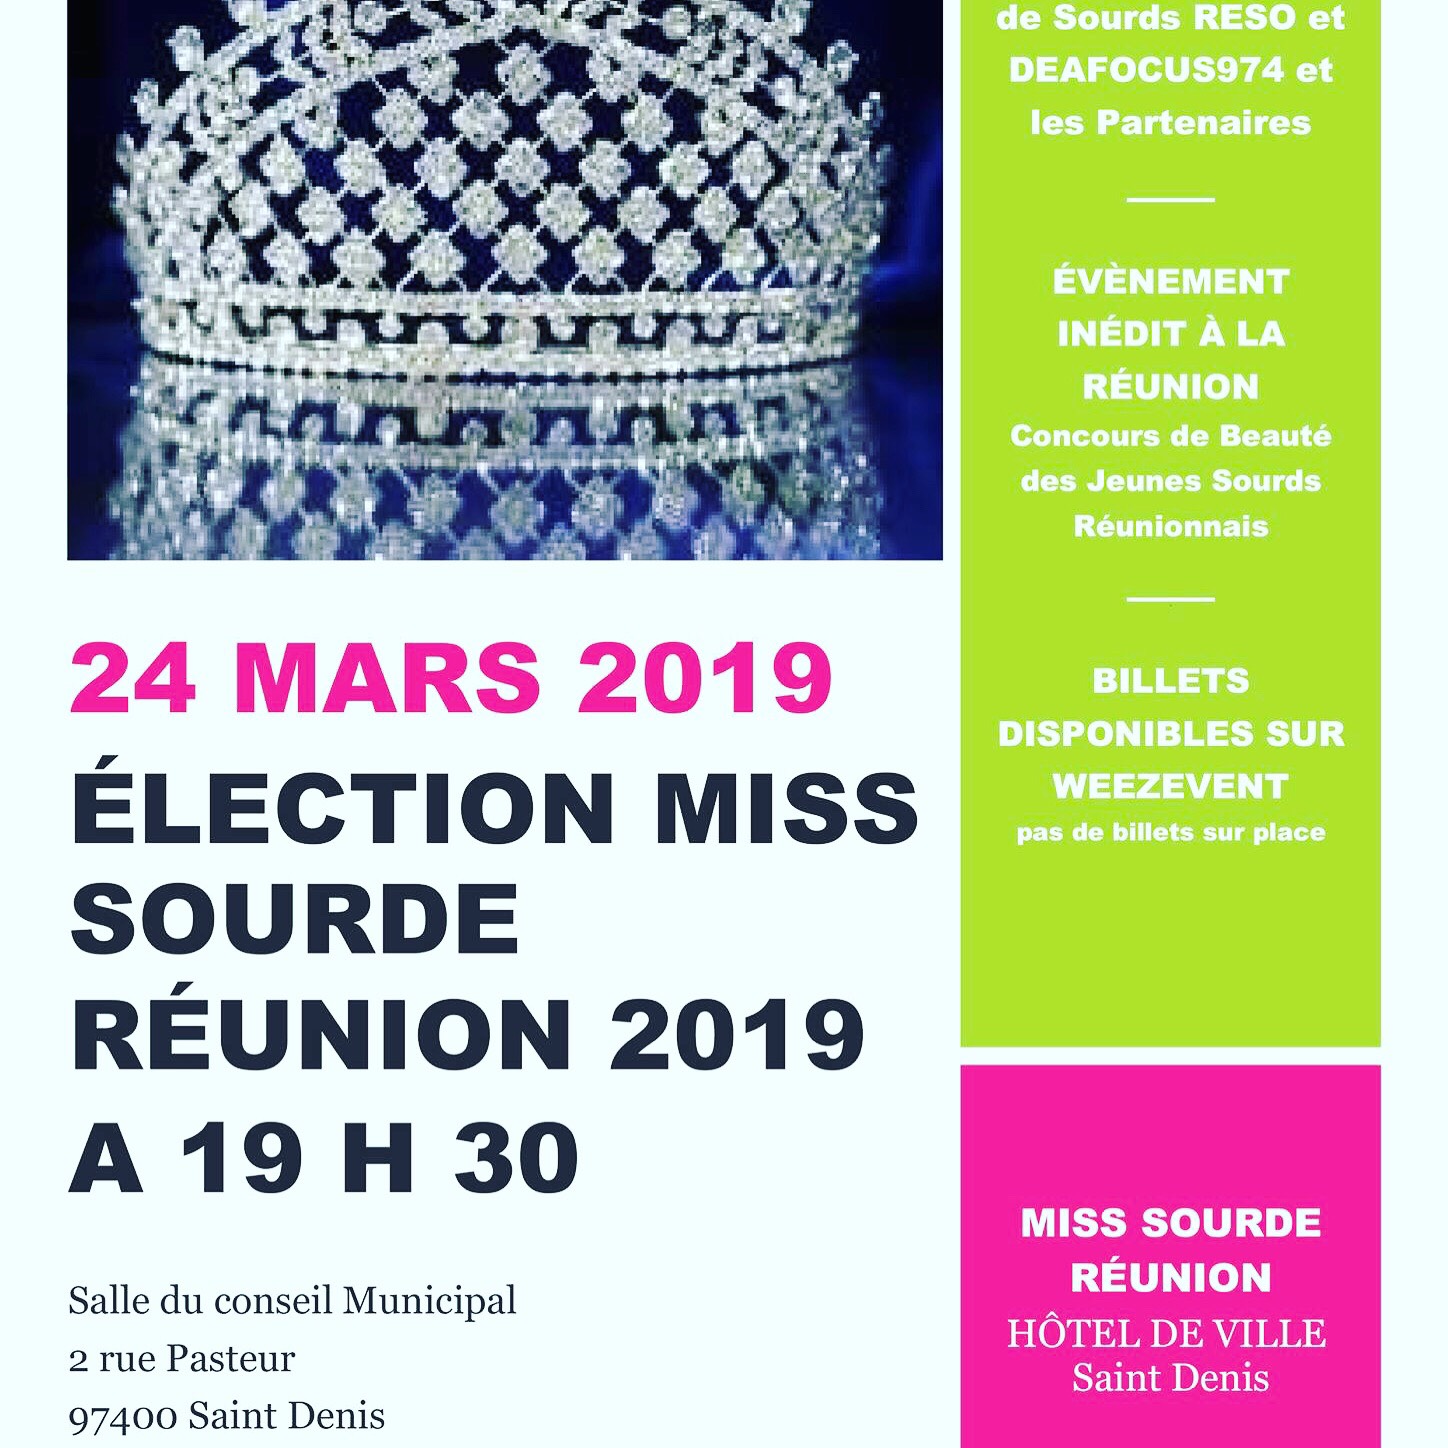 Miss Sourde Réunion 2019: élection dimanche 24 mars